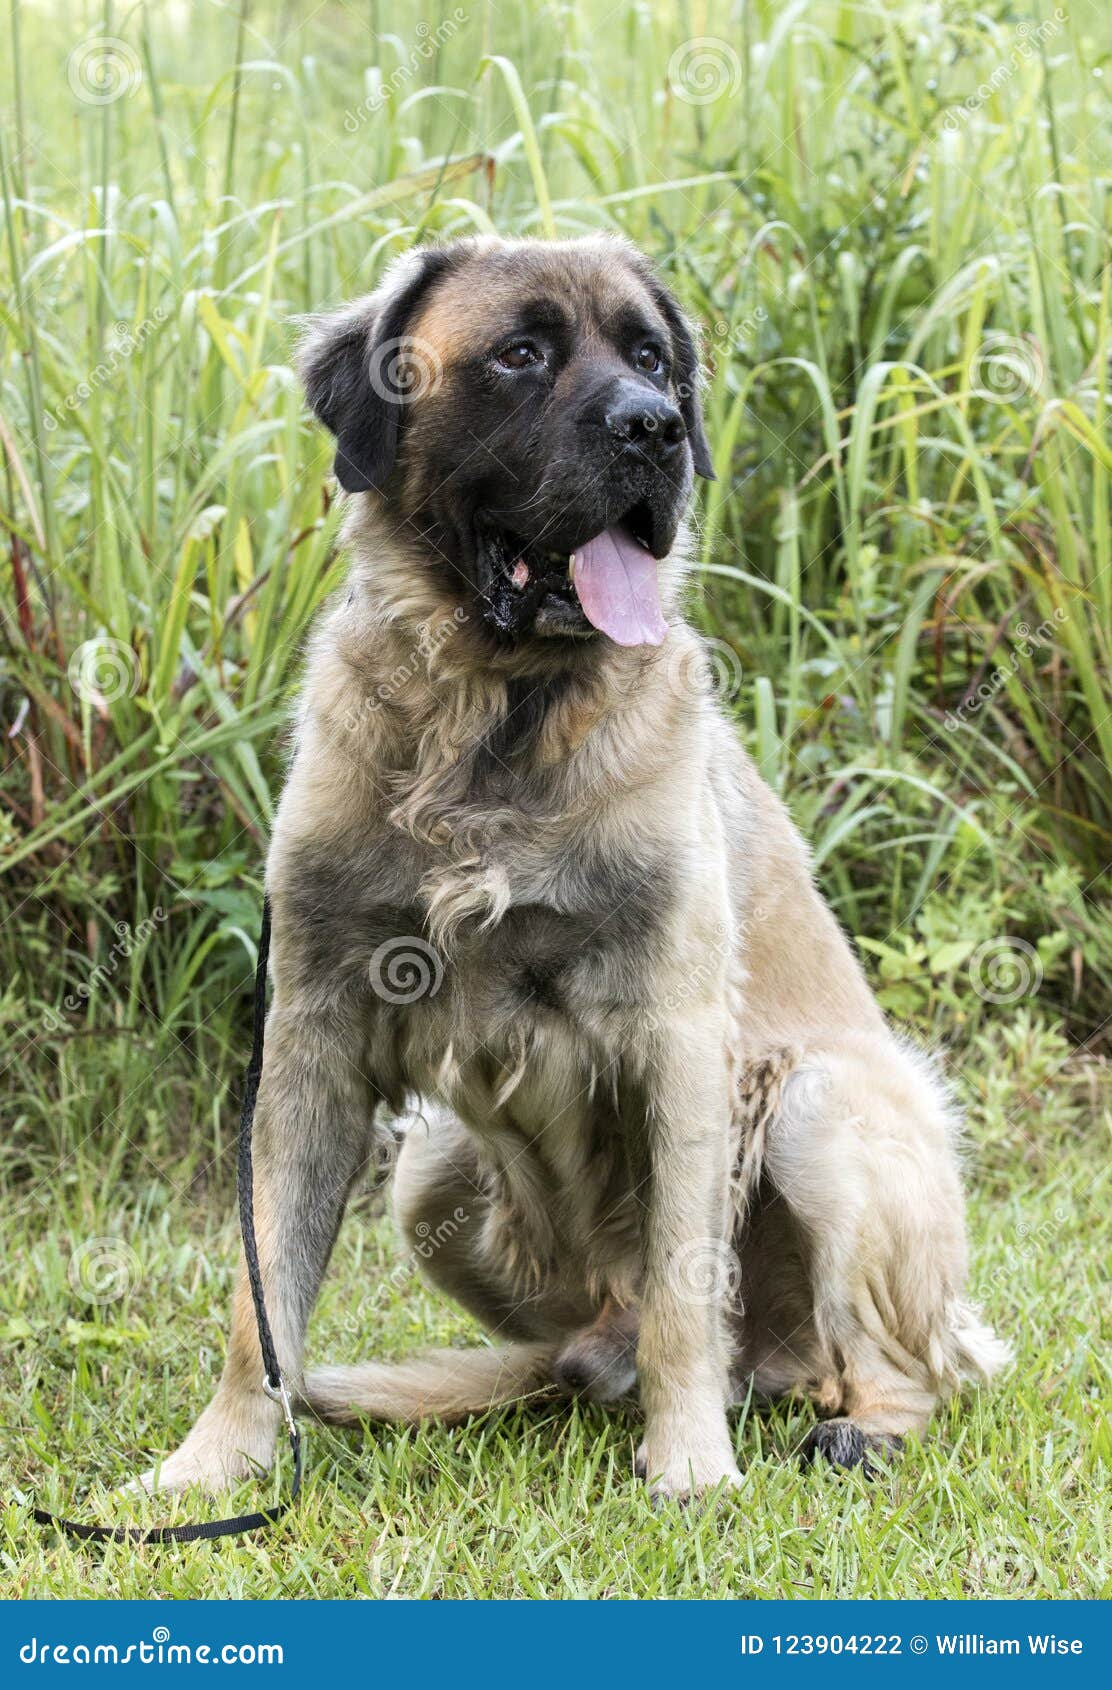 Tåget sjældenhed God følelse Huge Newfoundland Leonberger Mountain Dog Mix Breed Dog Adoption Photograph  Stock Photo - Image of shelter, photograph: 123904222